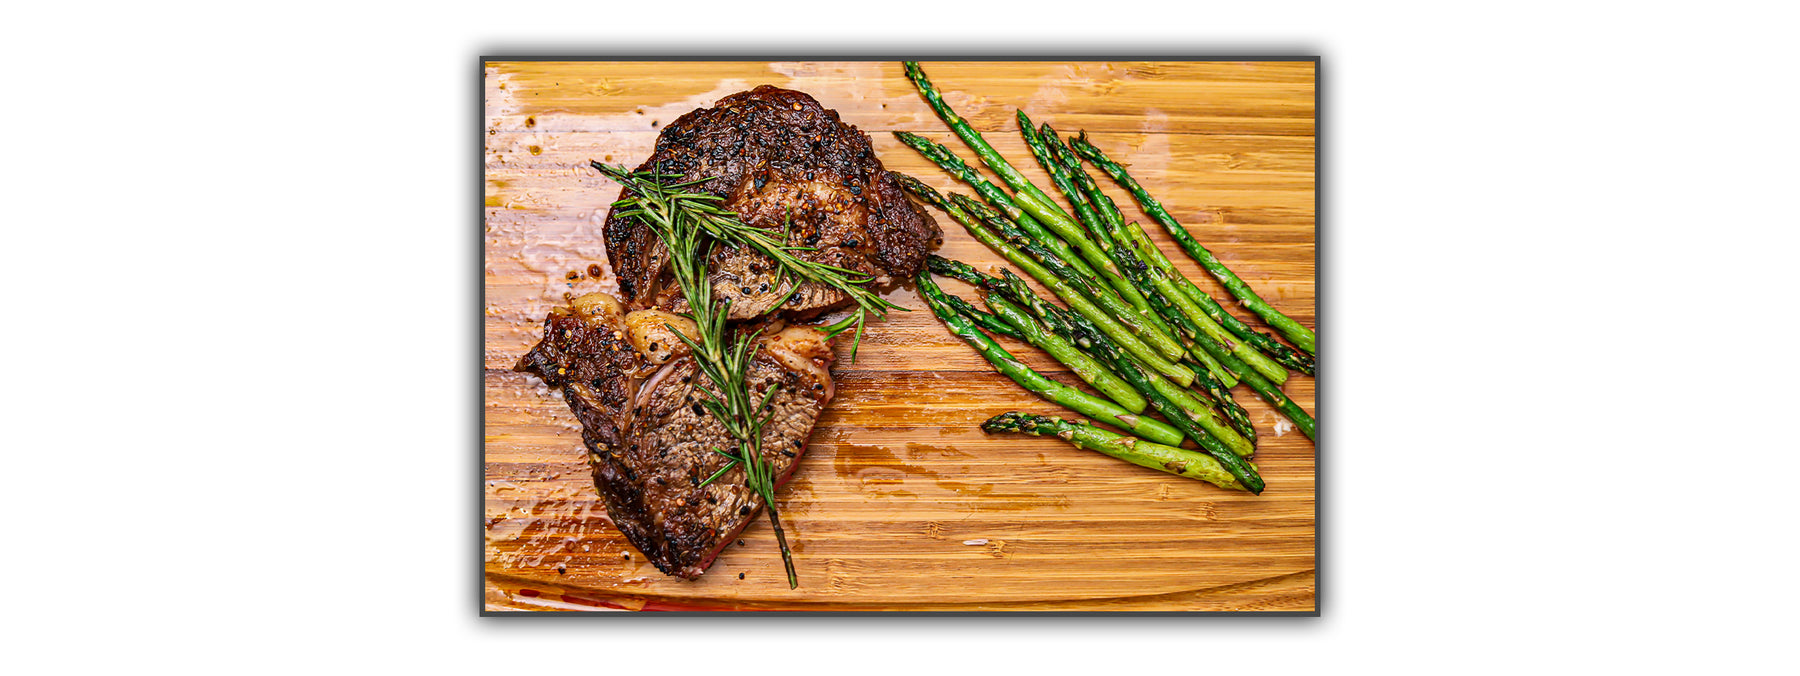 Ribeye Steak with Chillin' & Grillin' and Sautéed Asparagus